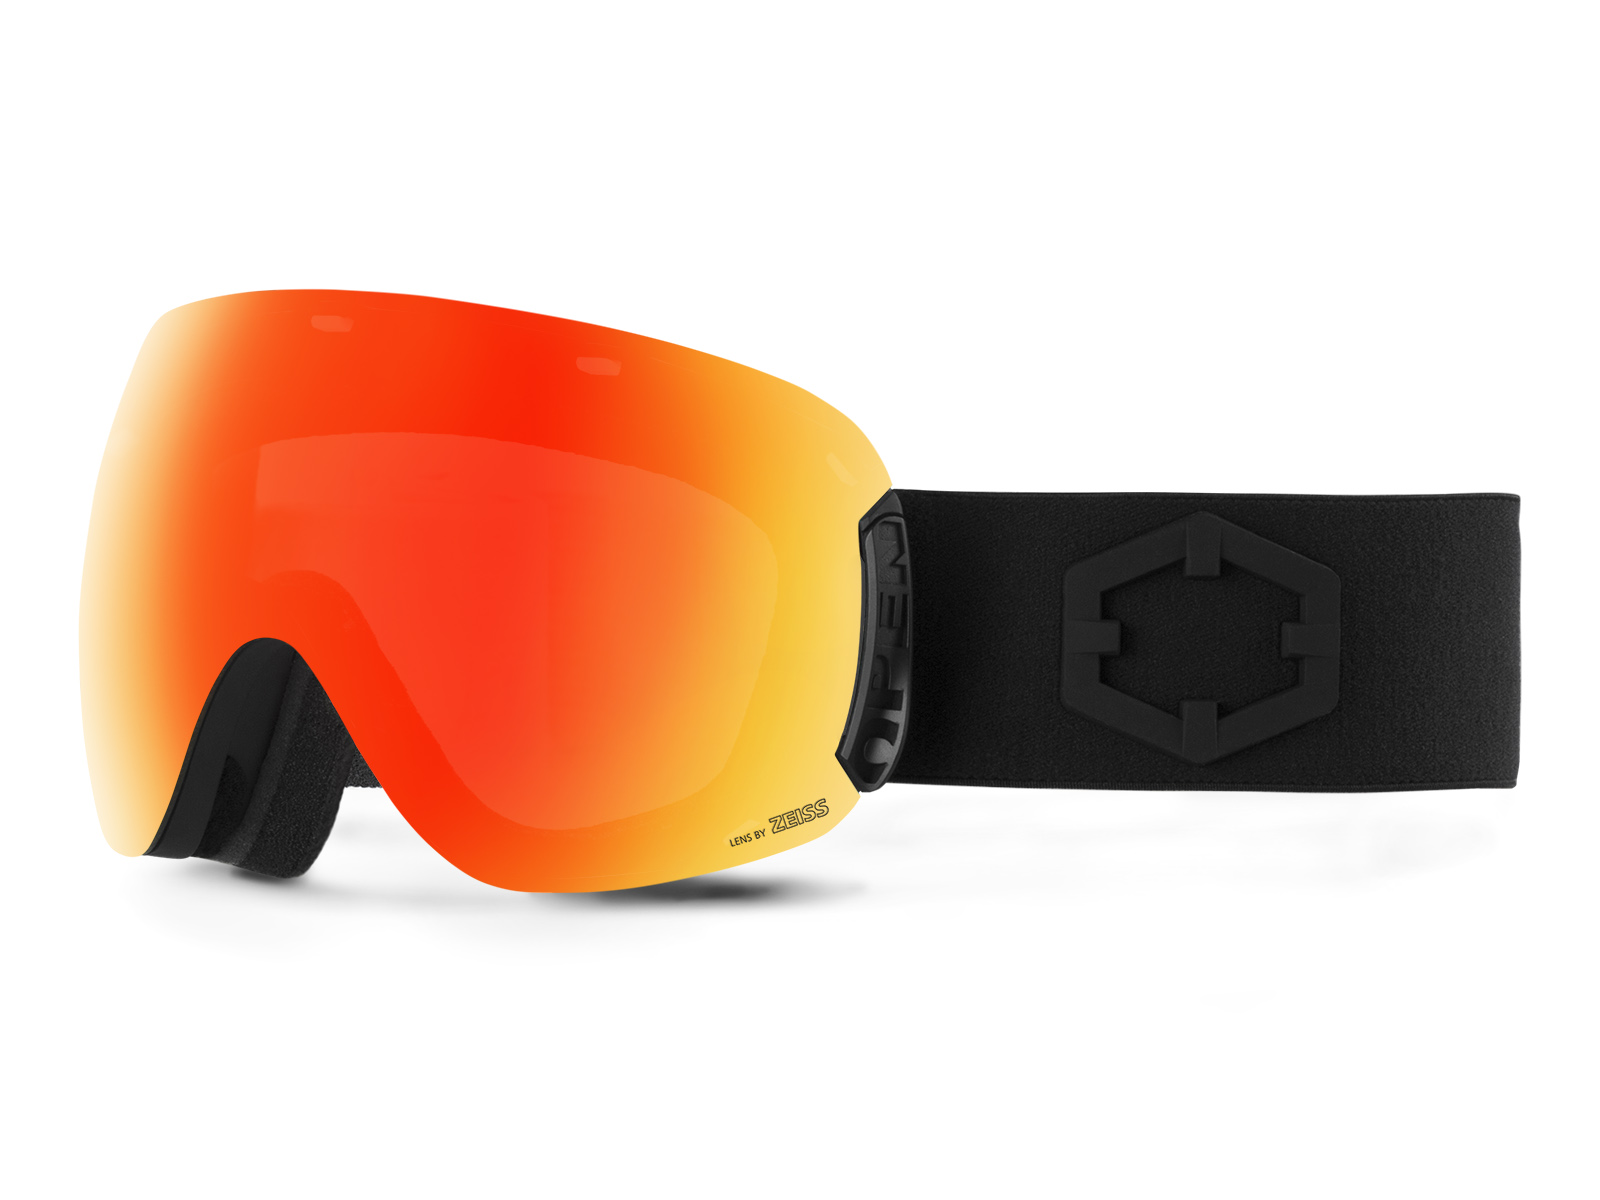 Maschera protettiva modulare occhiale con parabocca per sci